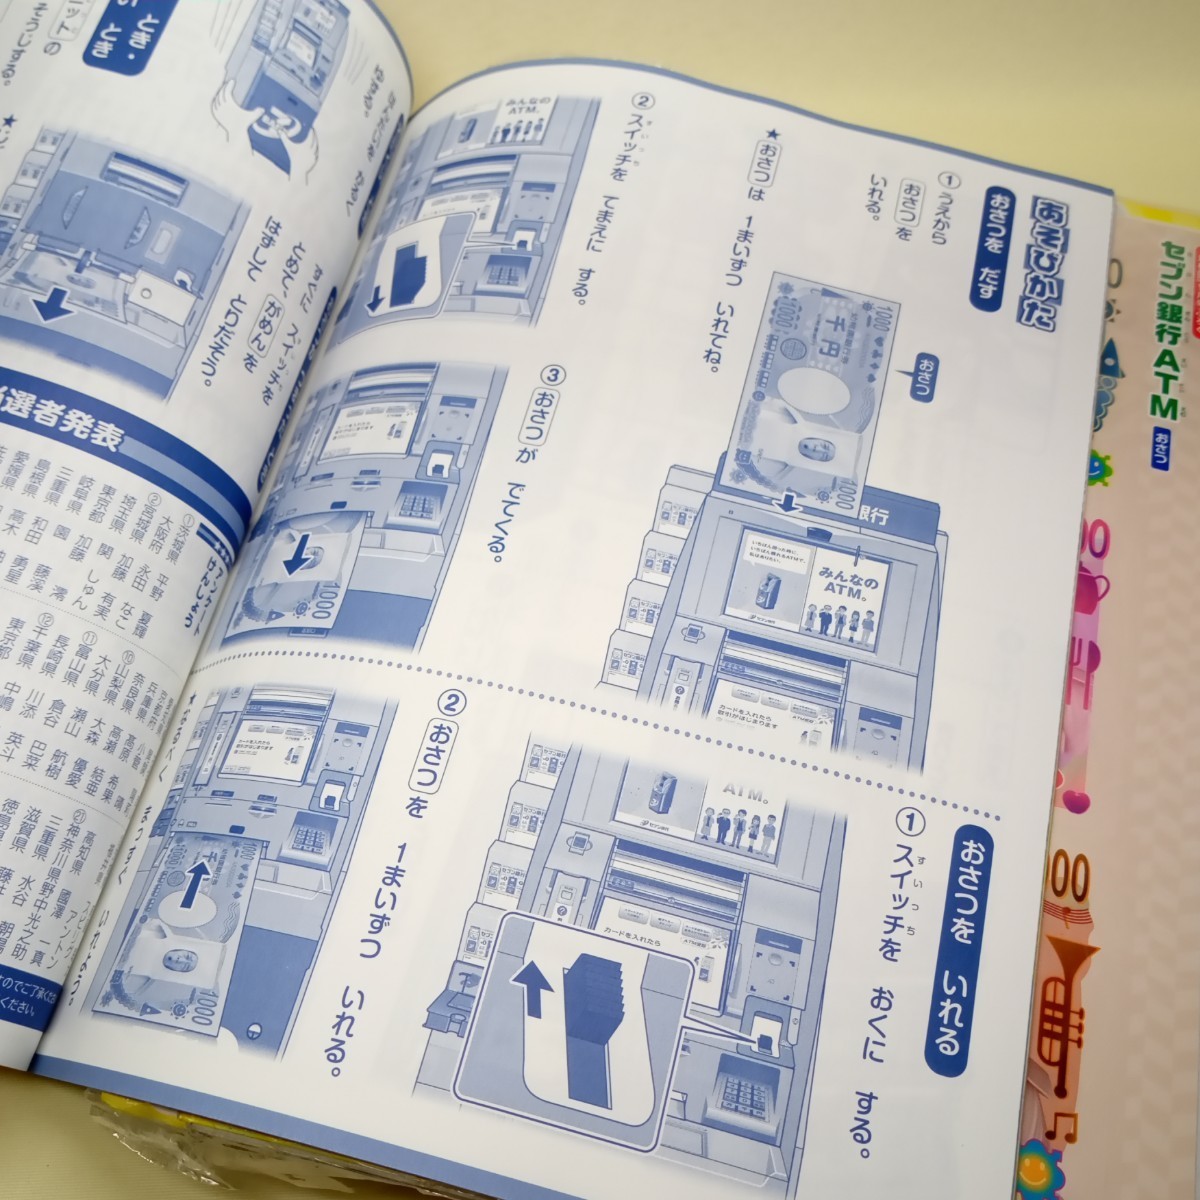 小学館 雑誌「幼稚園 ようちえん 付録 セブン銀行ATM」